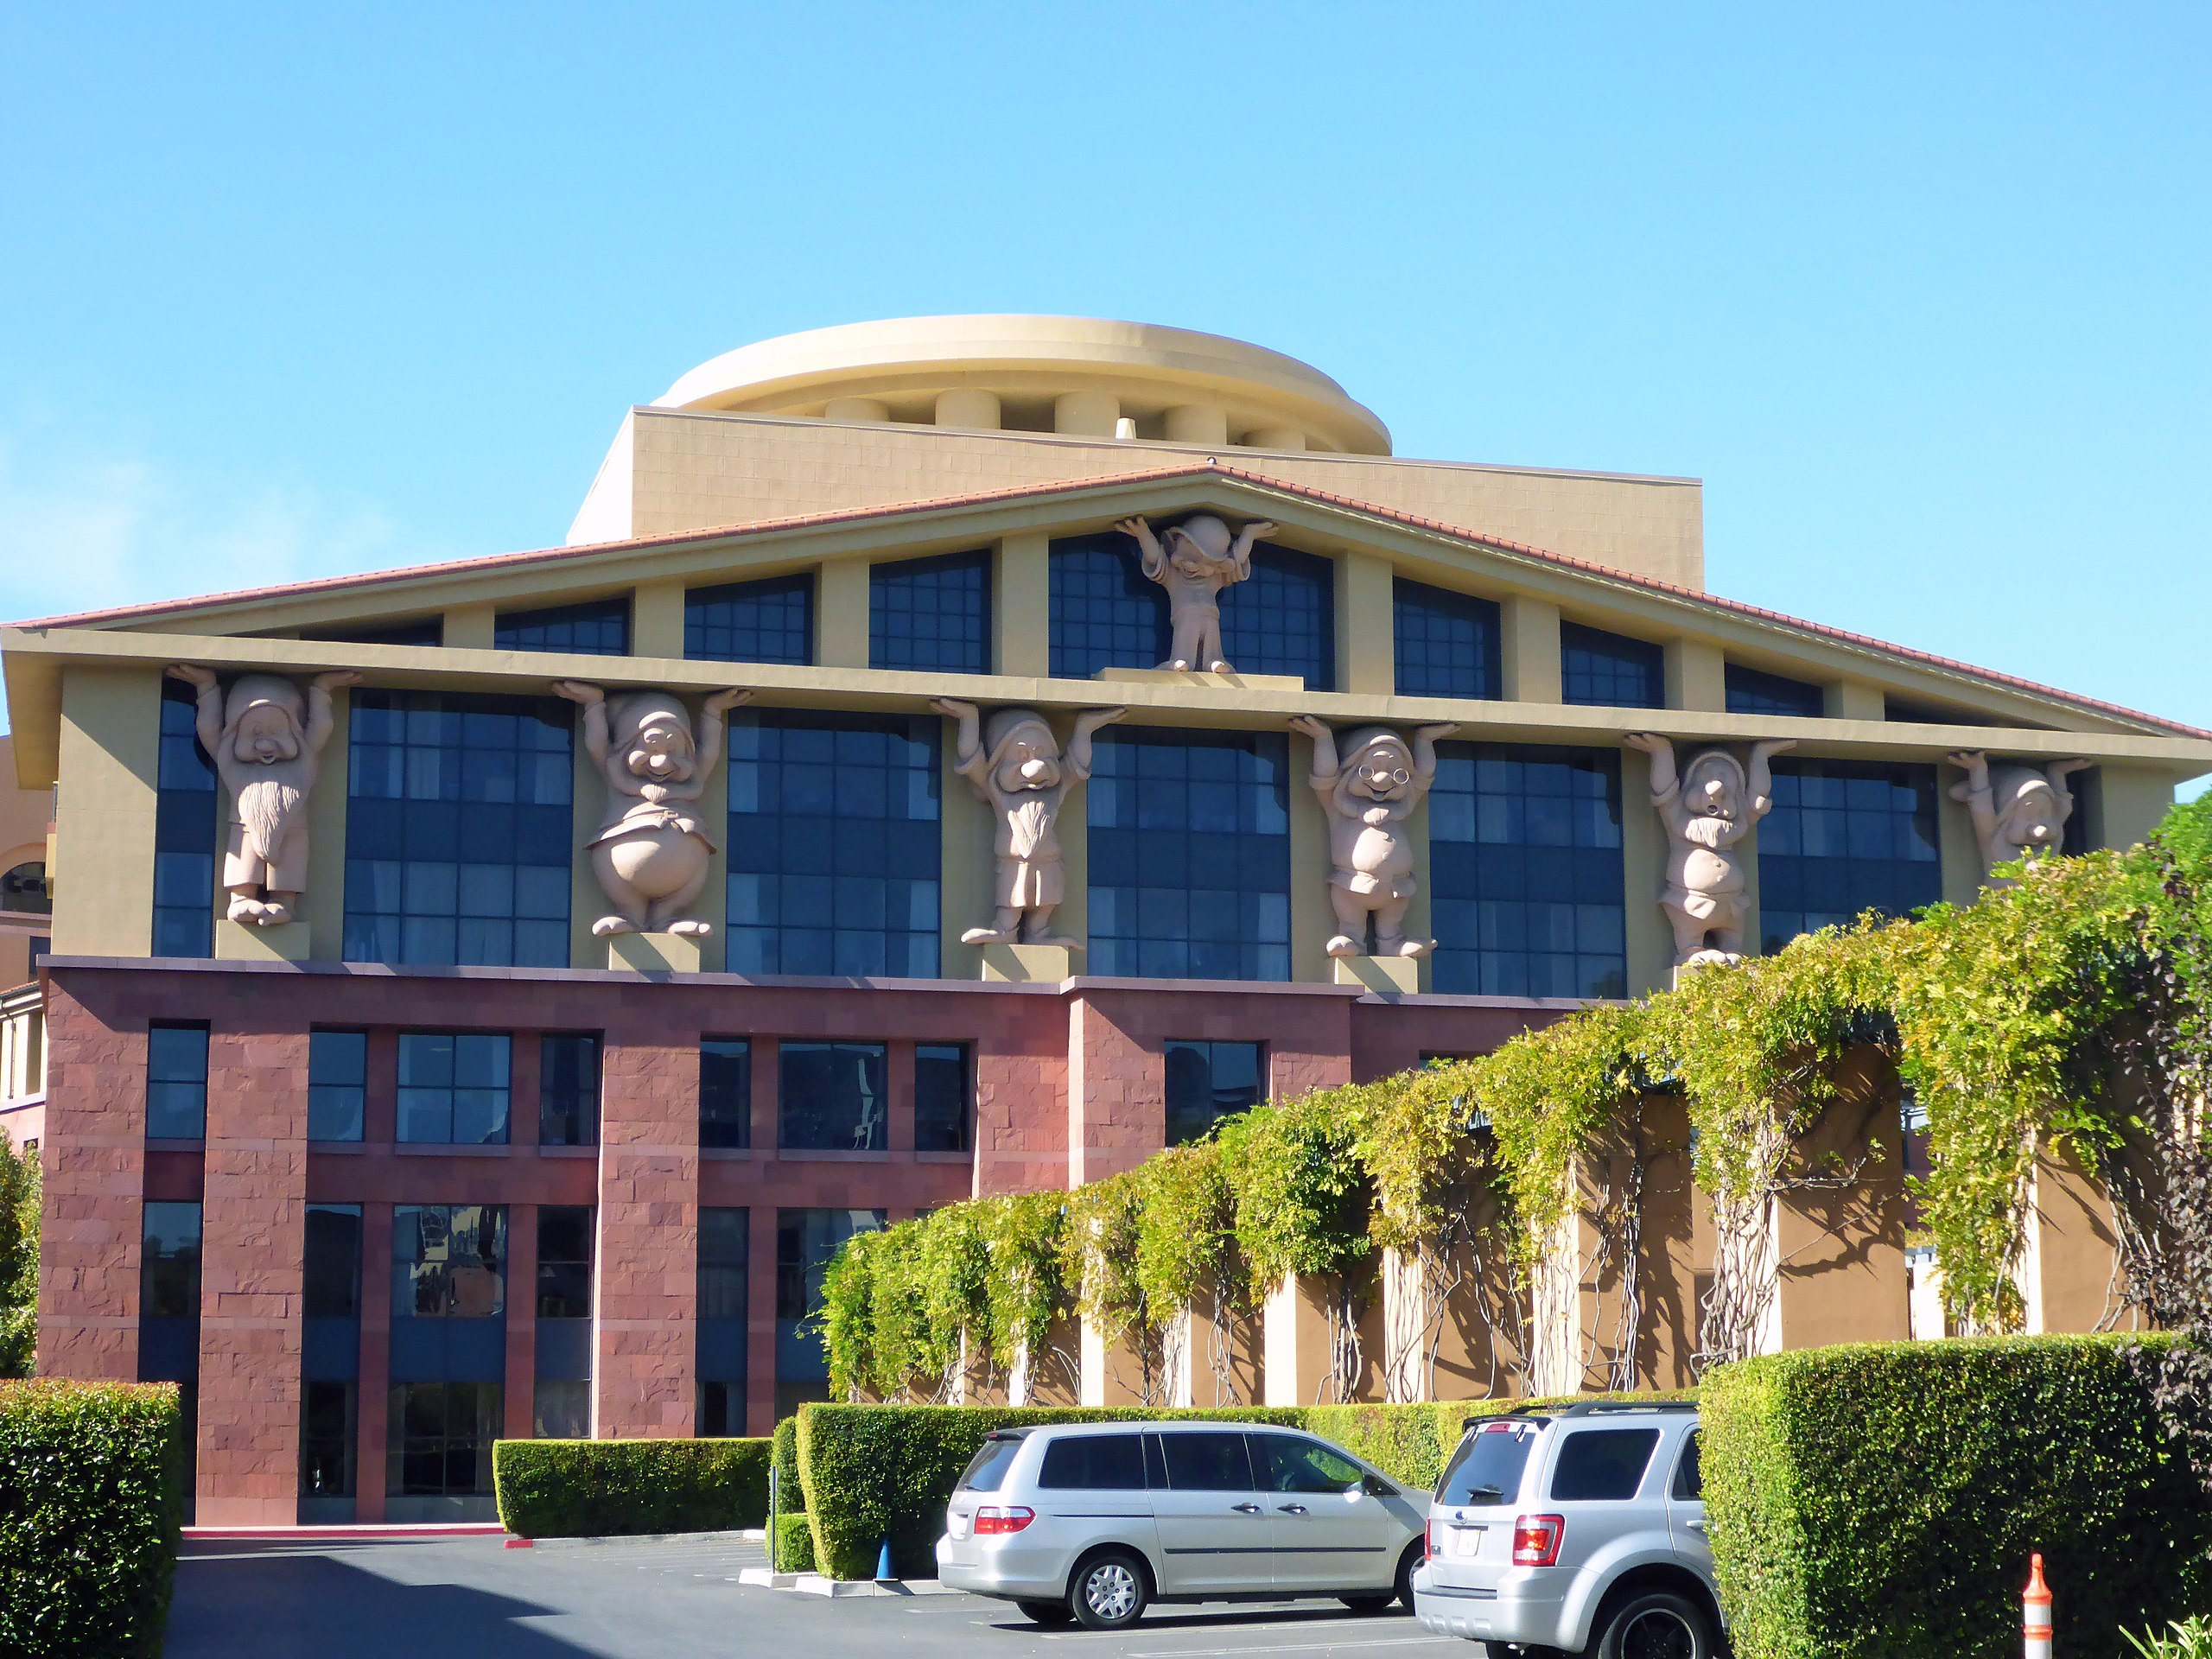 Здание Дисней в Калифорнии архитектура постмодернизм гномы